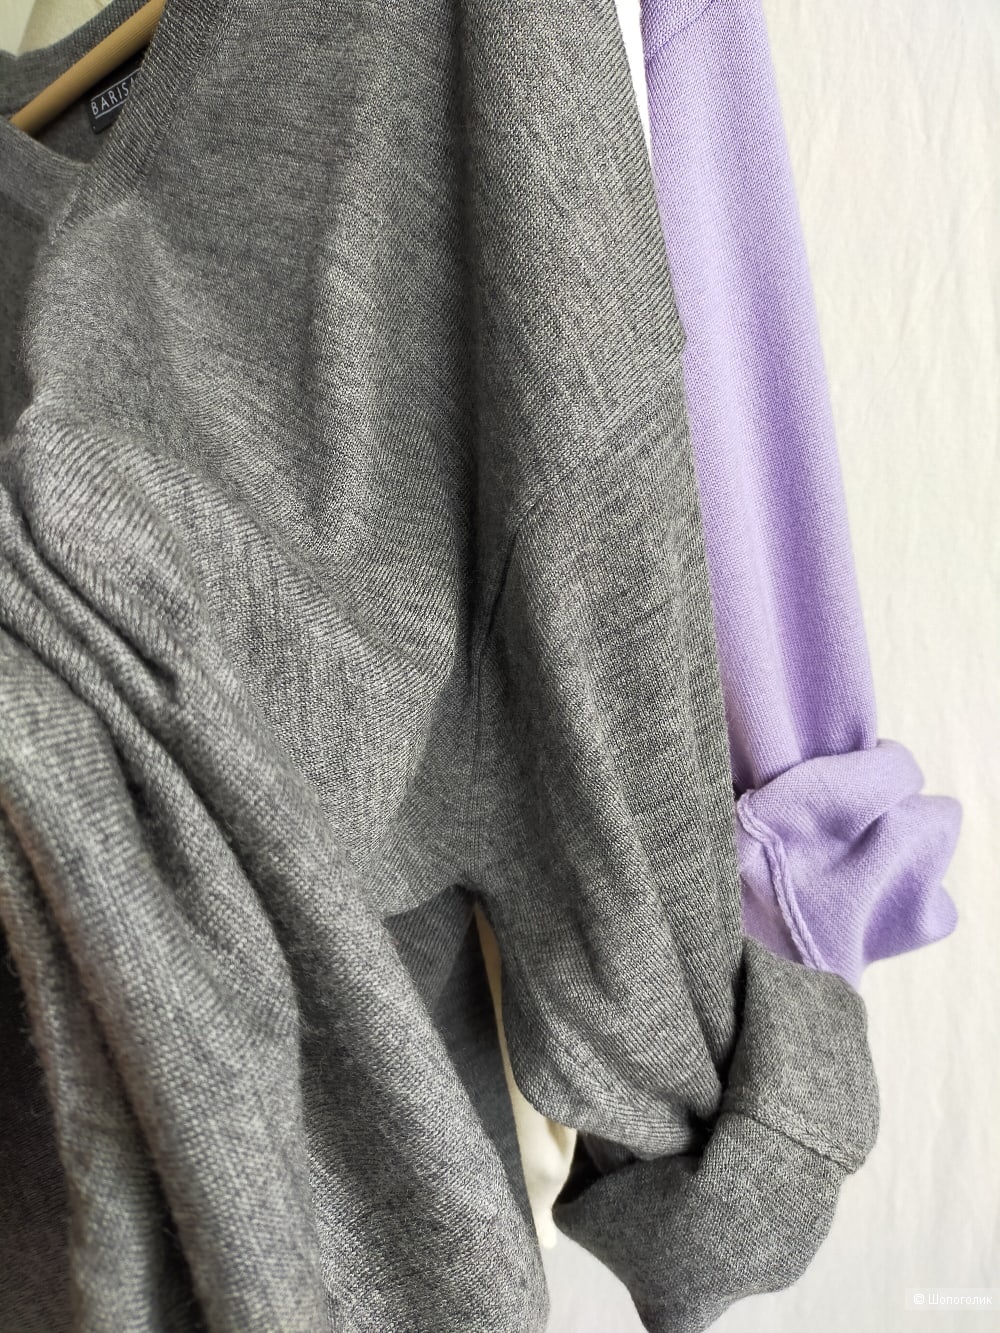 Шерстяной пуловер  Barisal, цвет грифельный, размер L / XL / XXL